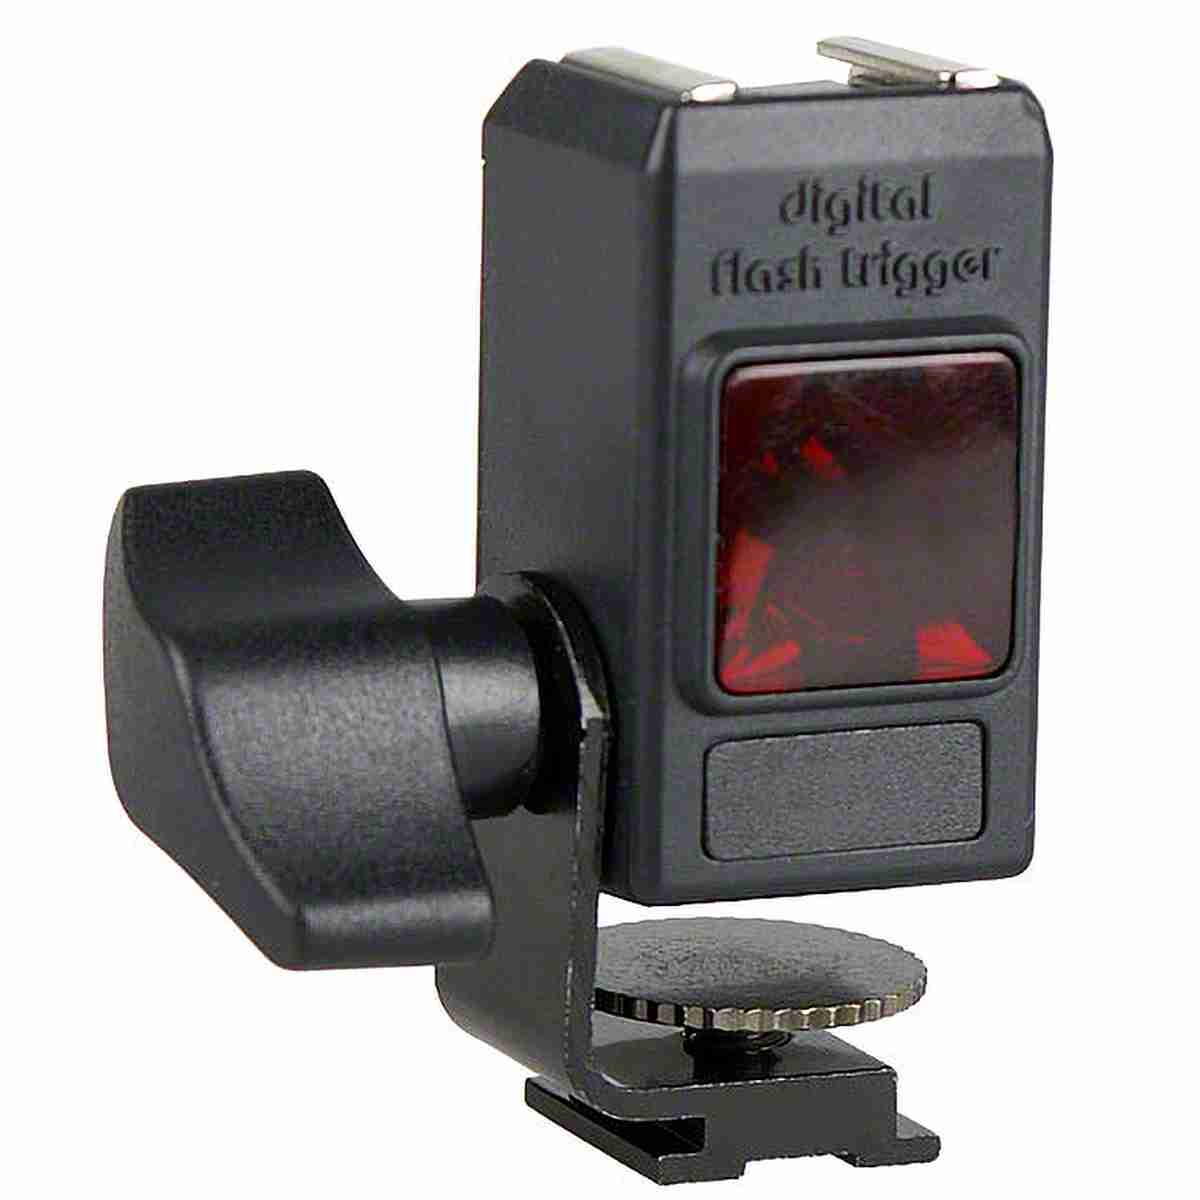 Walimex Digital Flash Trigger